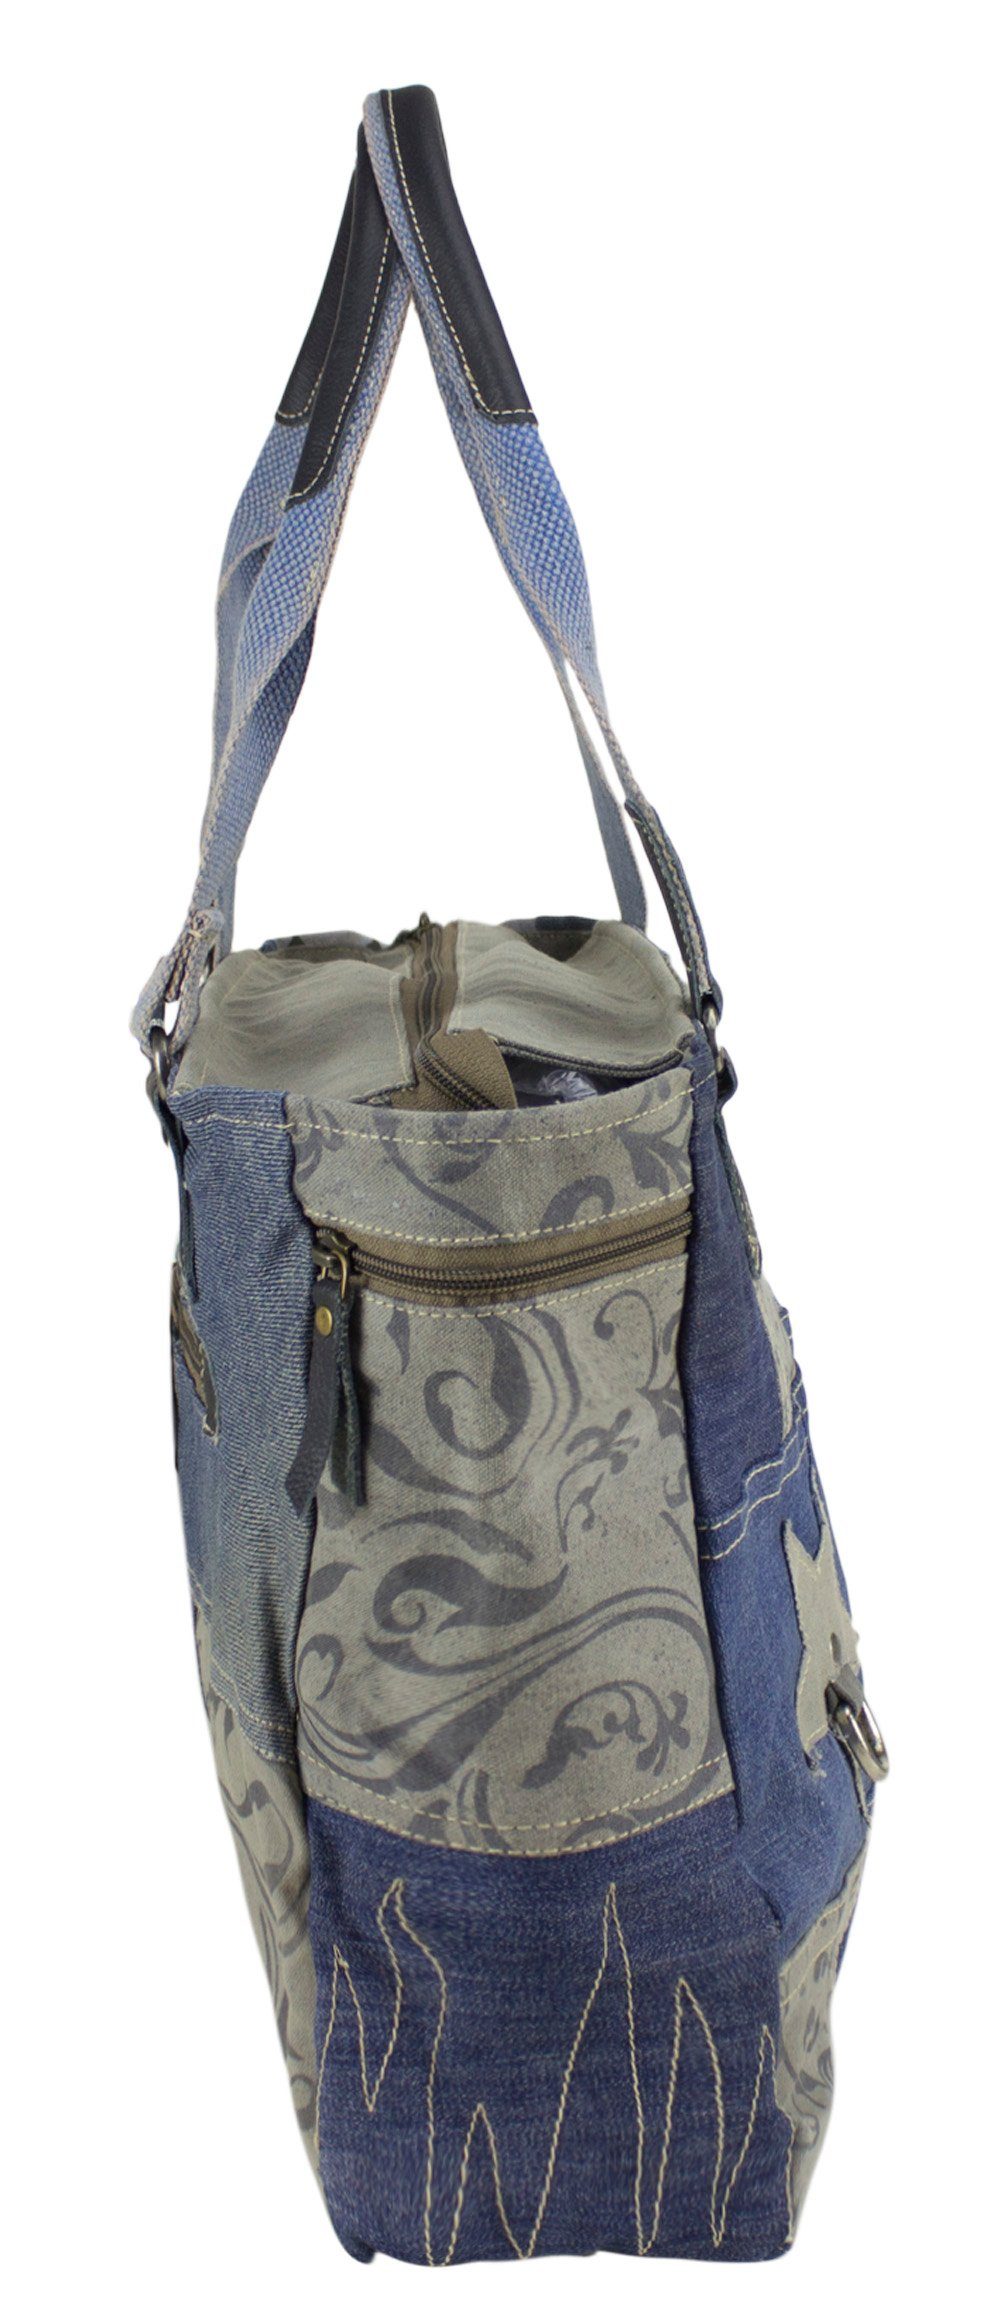 Jeans Materialien und Große Handtasche. 52226, recycelte Damen Schultertasche grau Tasche recycelte Sunsa Handtasche aus Canvas.